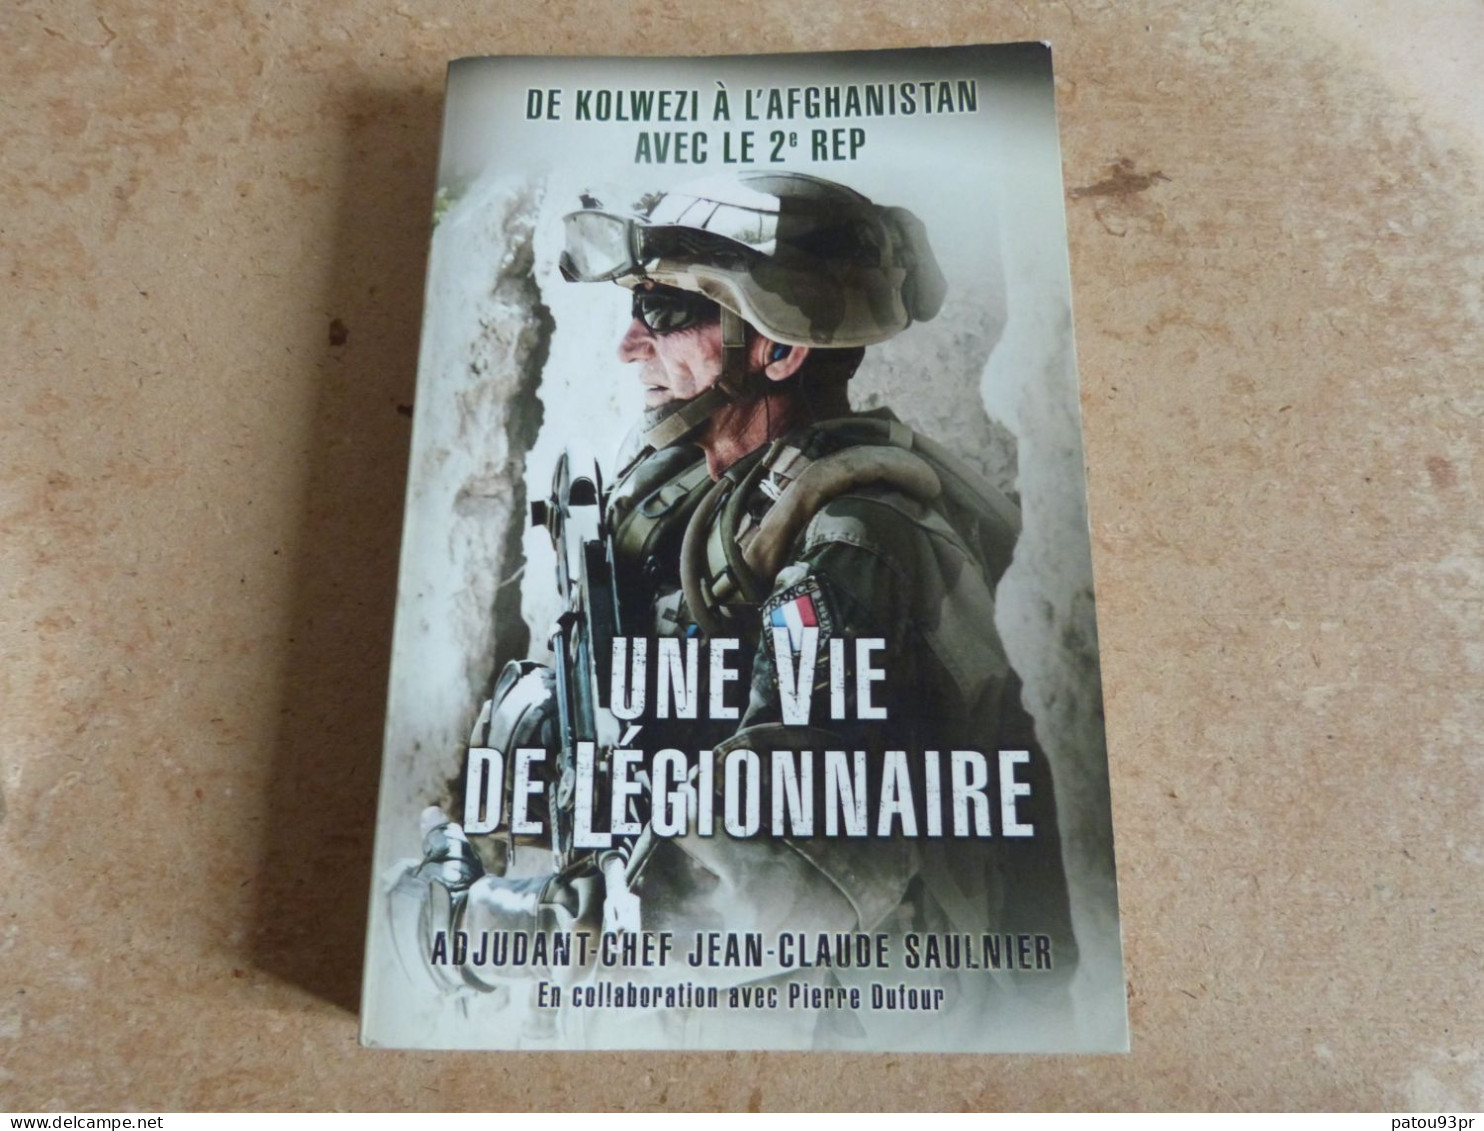 lot de 3 livres militaires sur armée française (légion étrangère, commandos marine et forces spéciales)